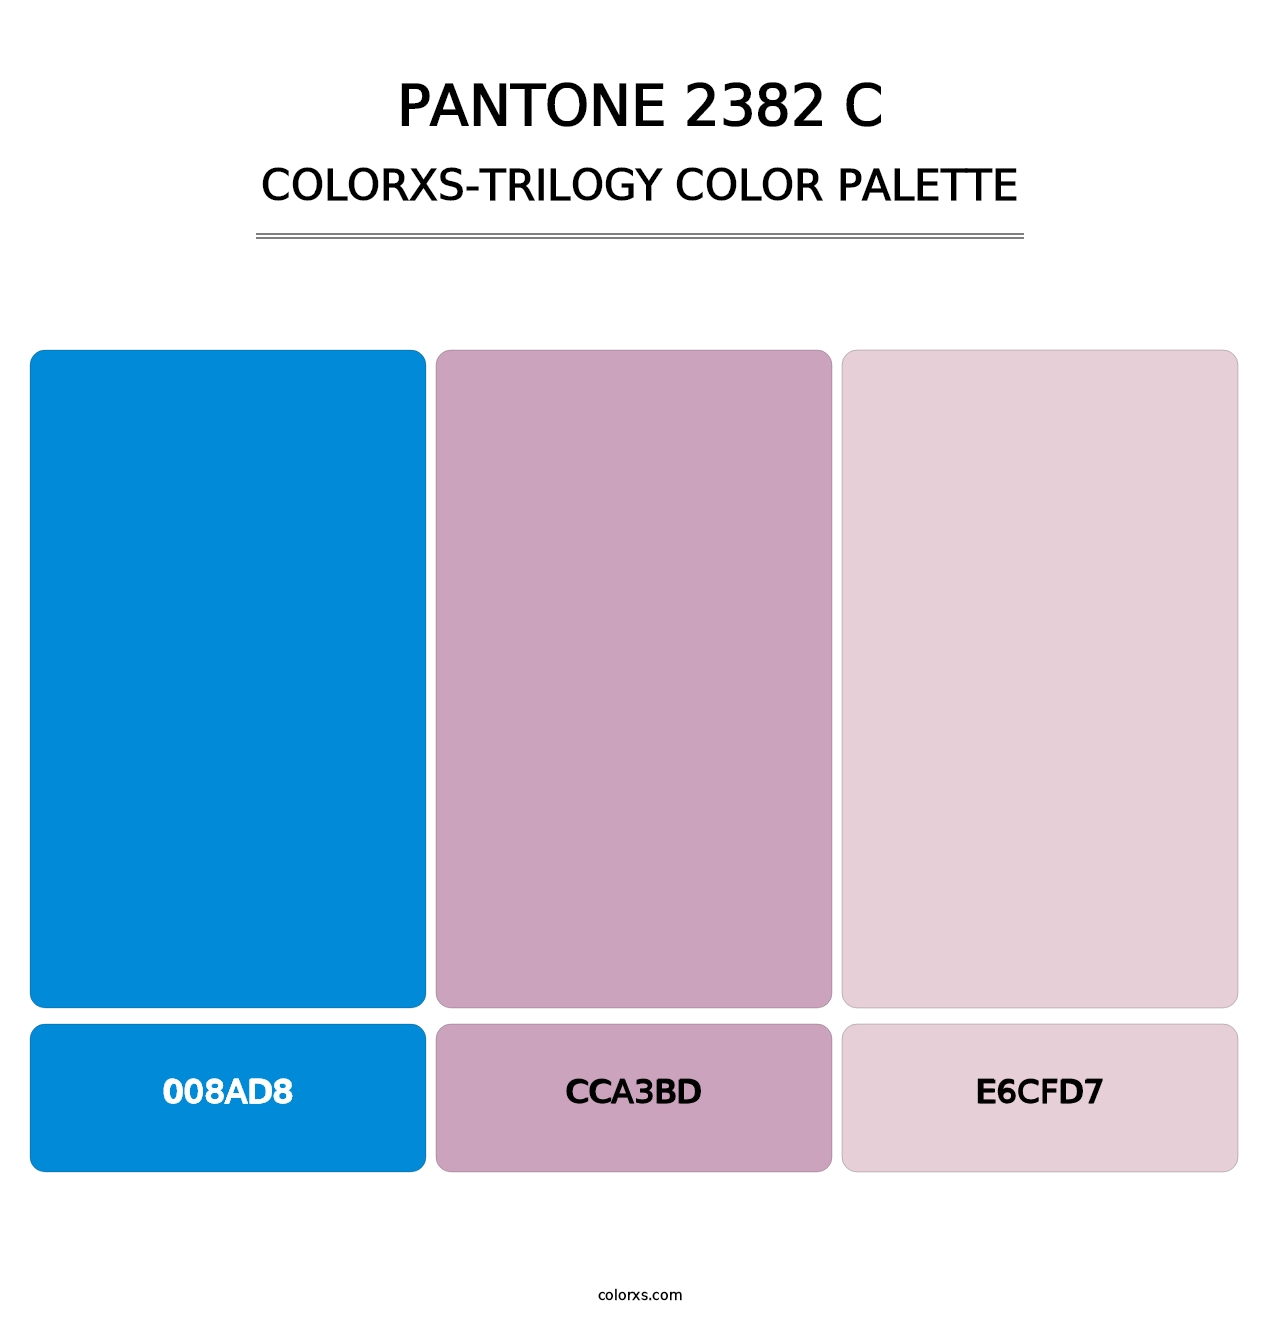 PANTONE 2382 C - Colorxs Trilogy Palette